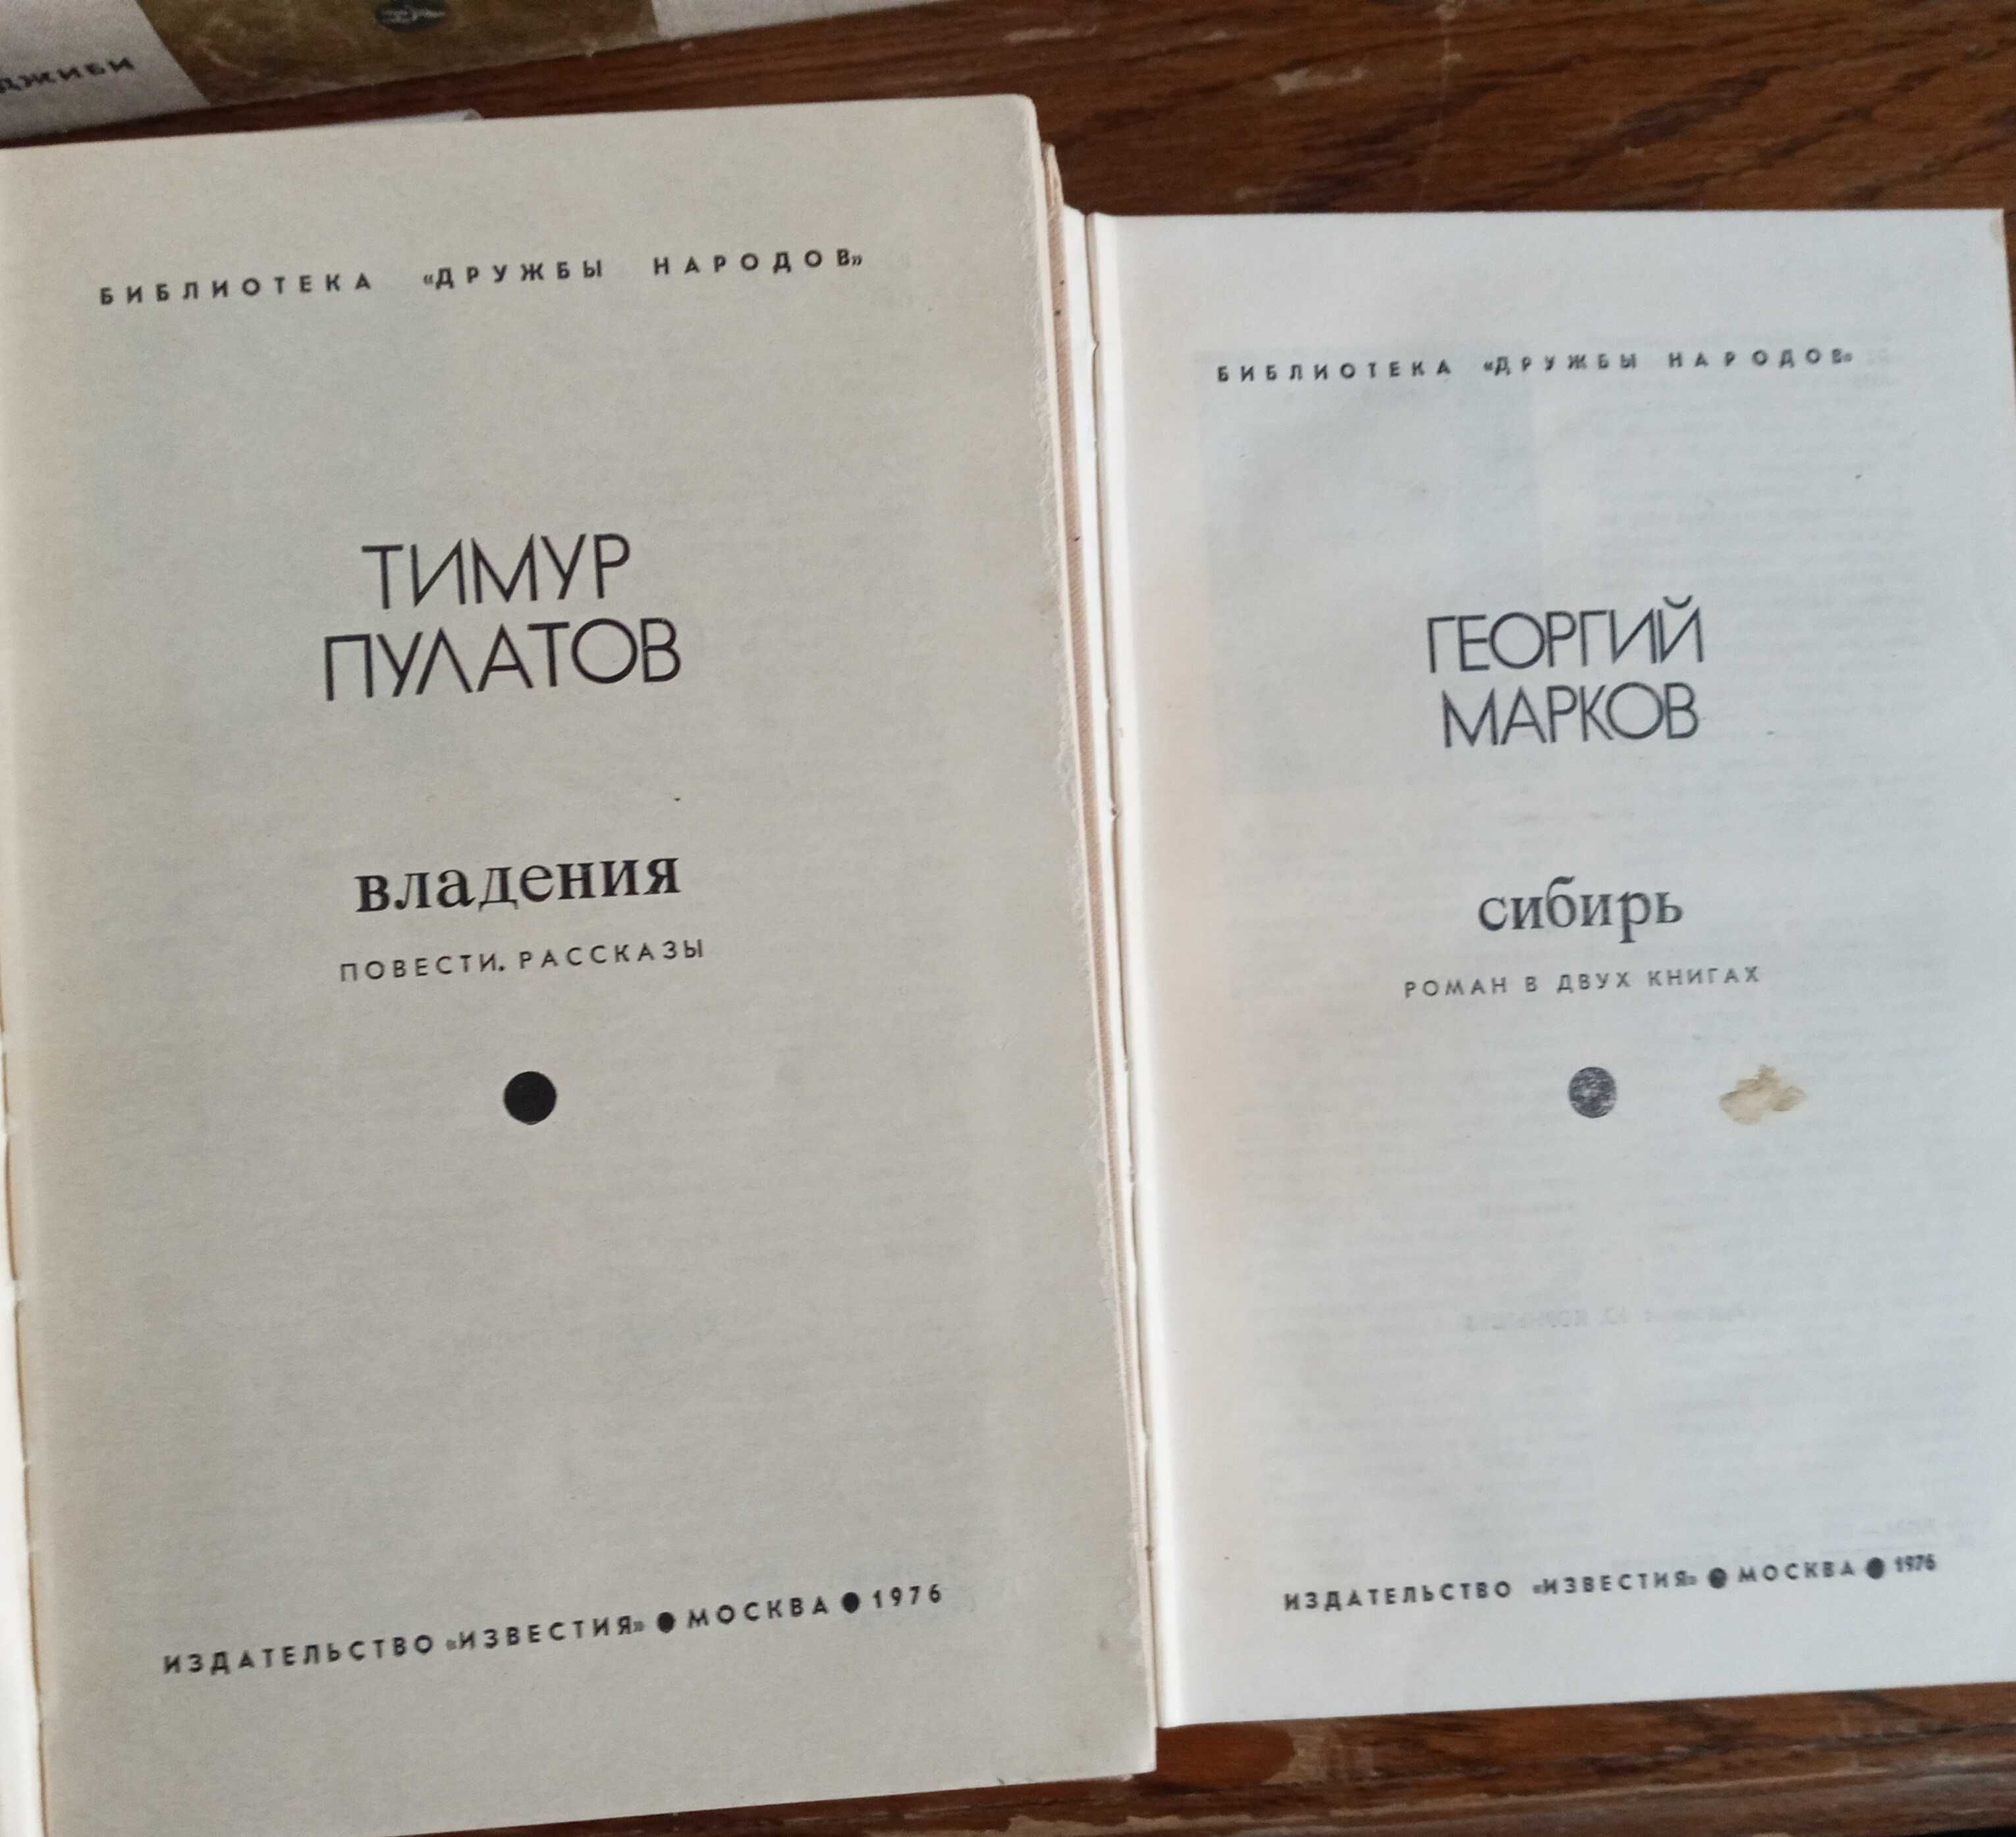 Книги серии «Библиотека дружбы народов» 1976 г